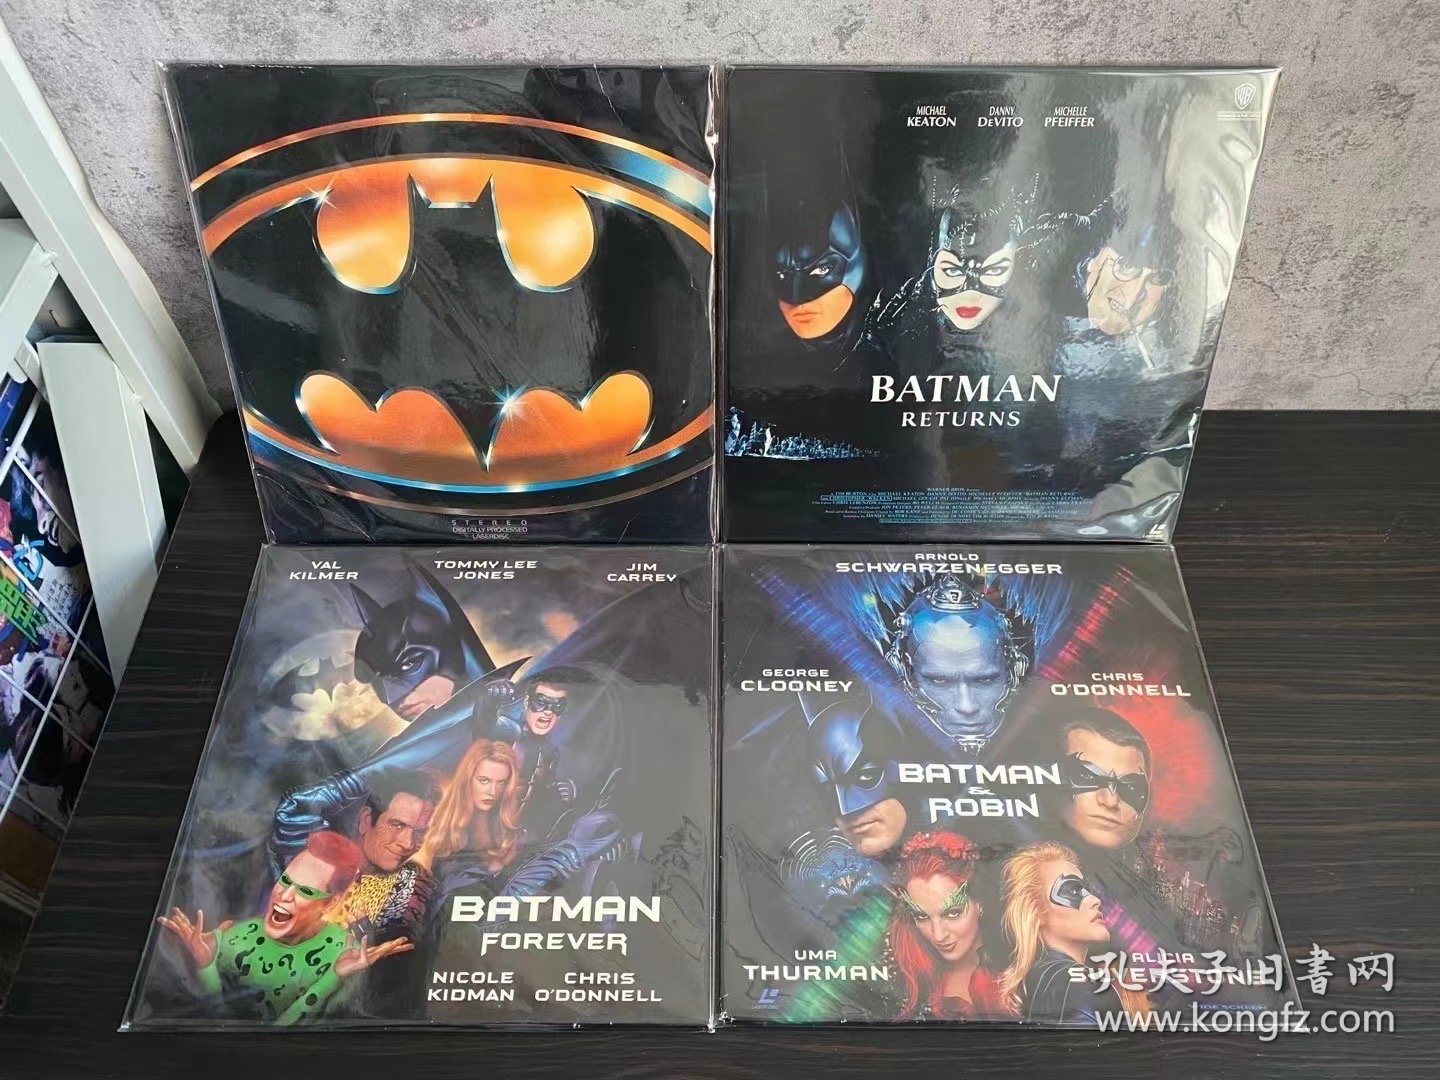 美版 宽屏版 蝙蝠侠 1-4部 第二部是日版 双碟装 4张LD镭射影碟打包出